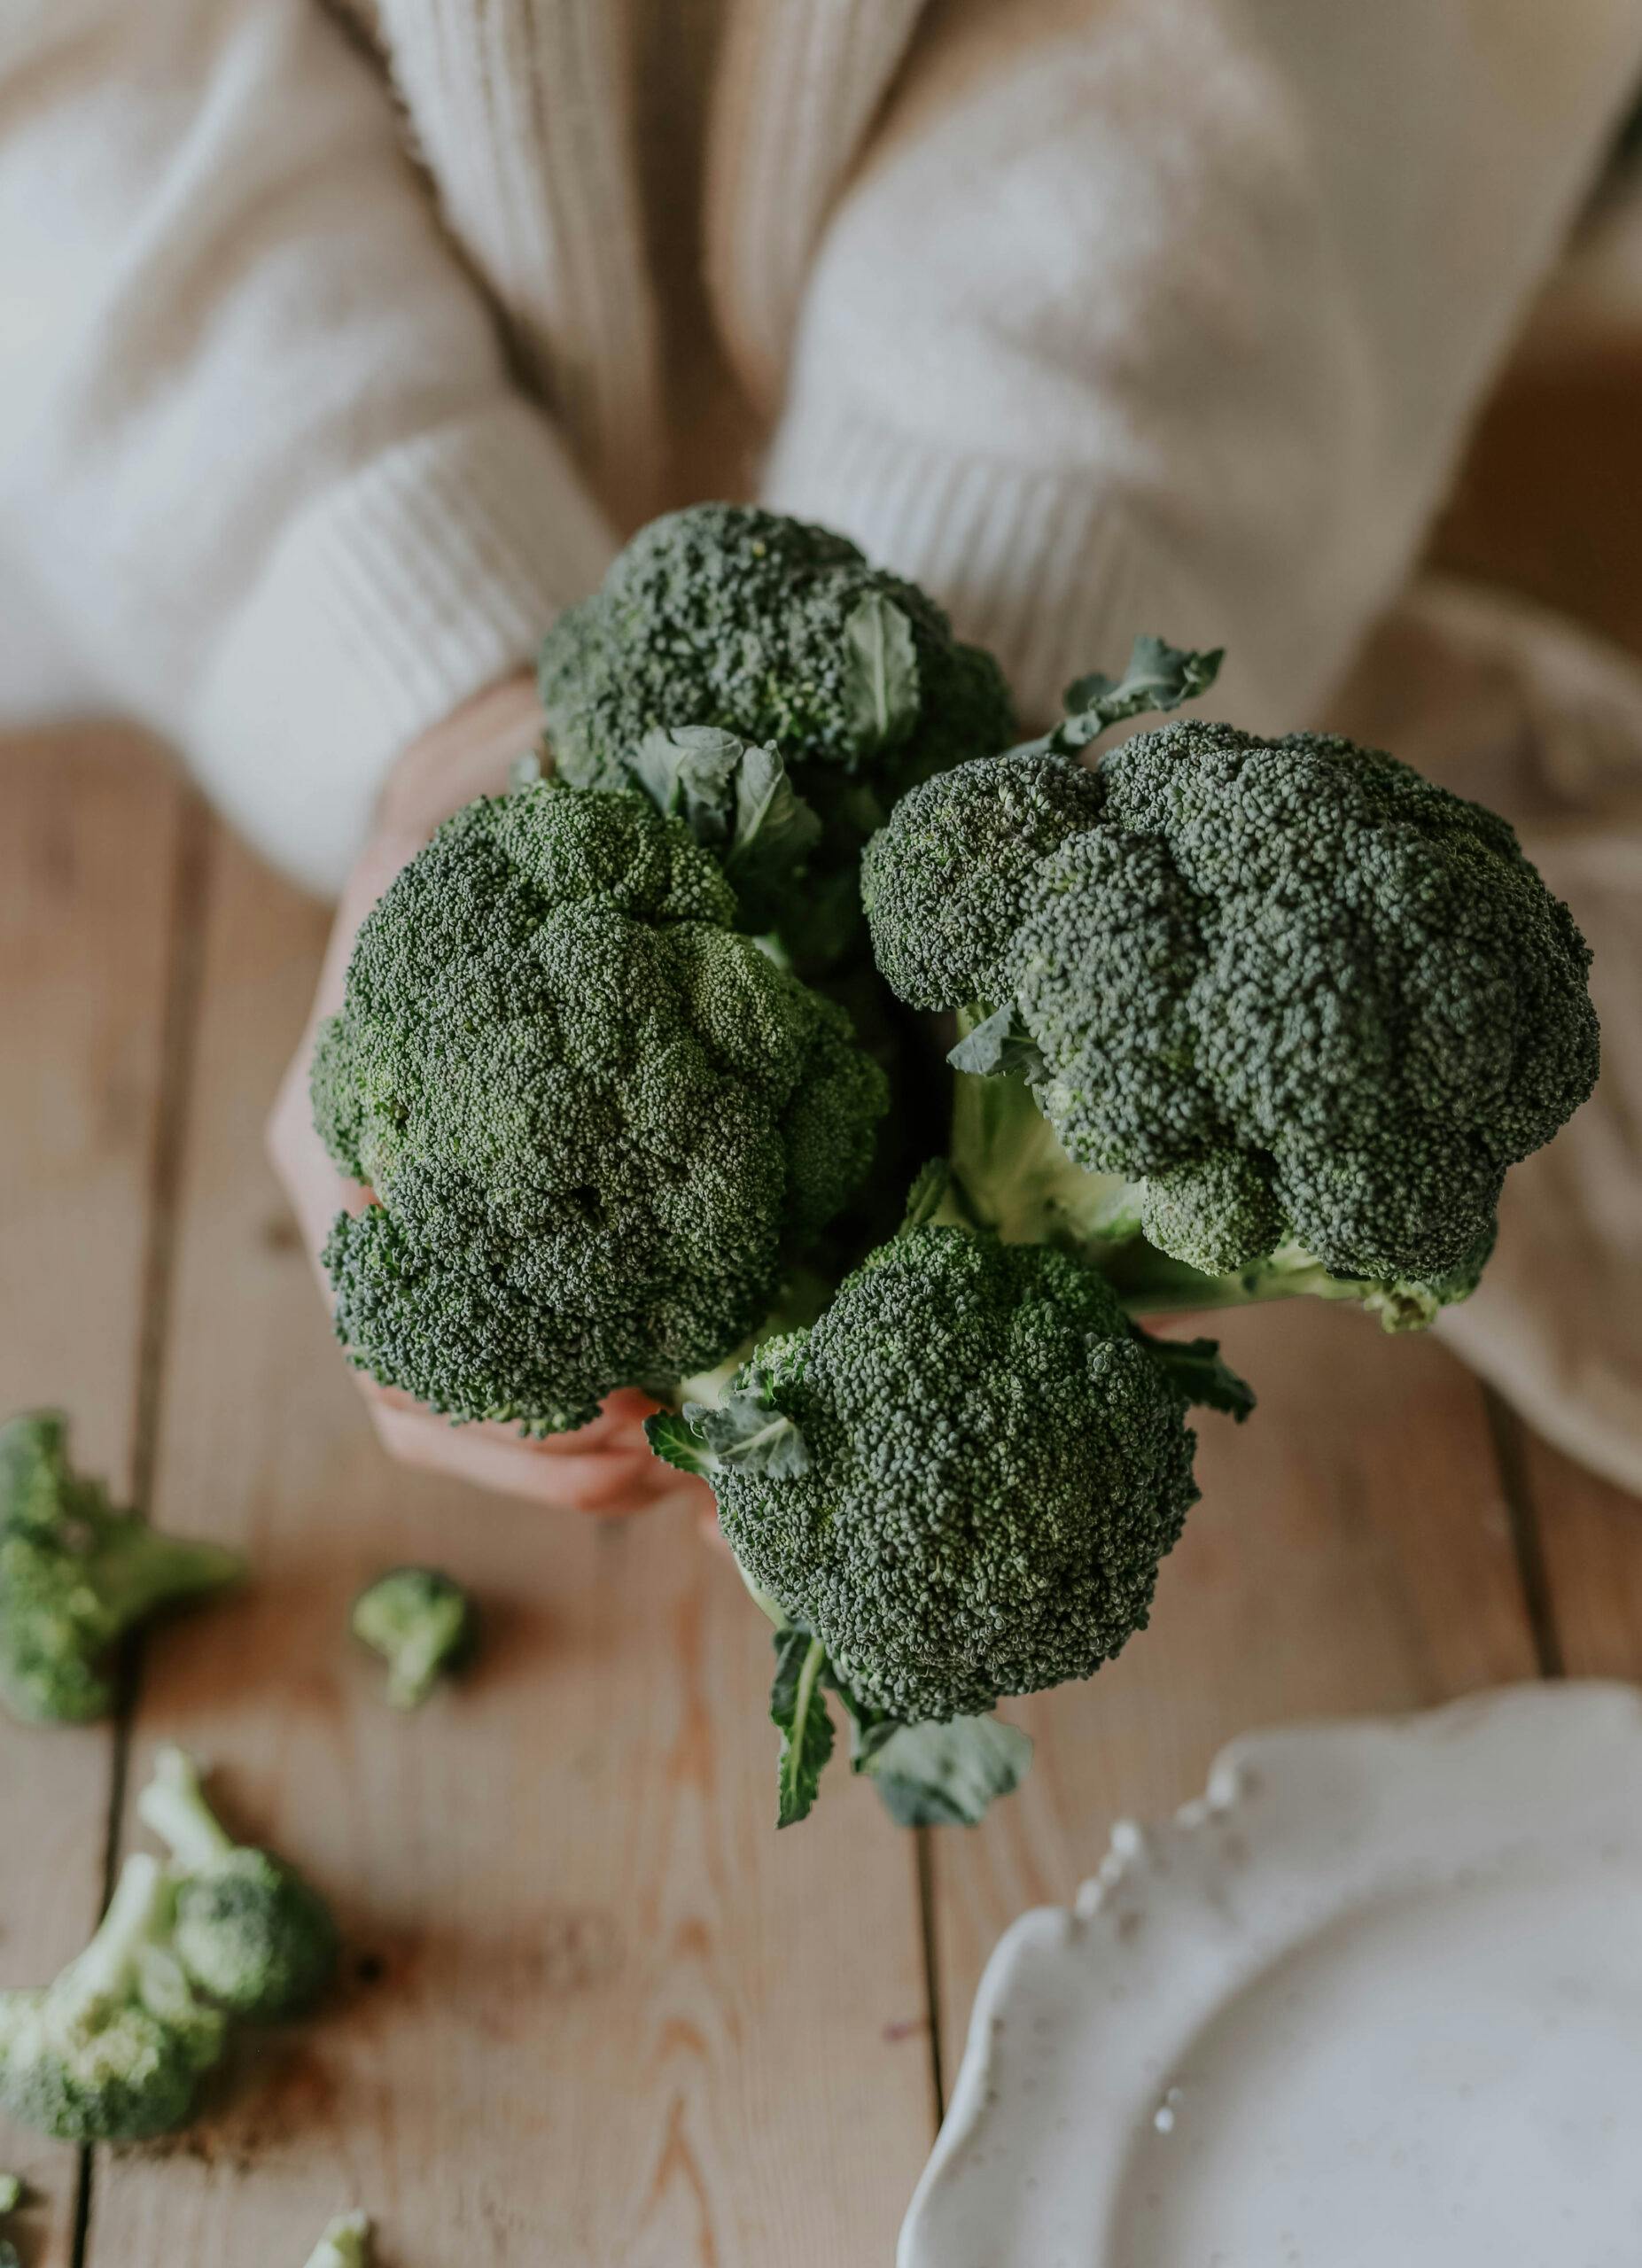 anna kubel håller upp broccoli